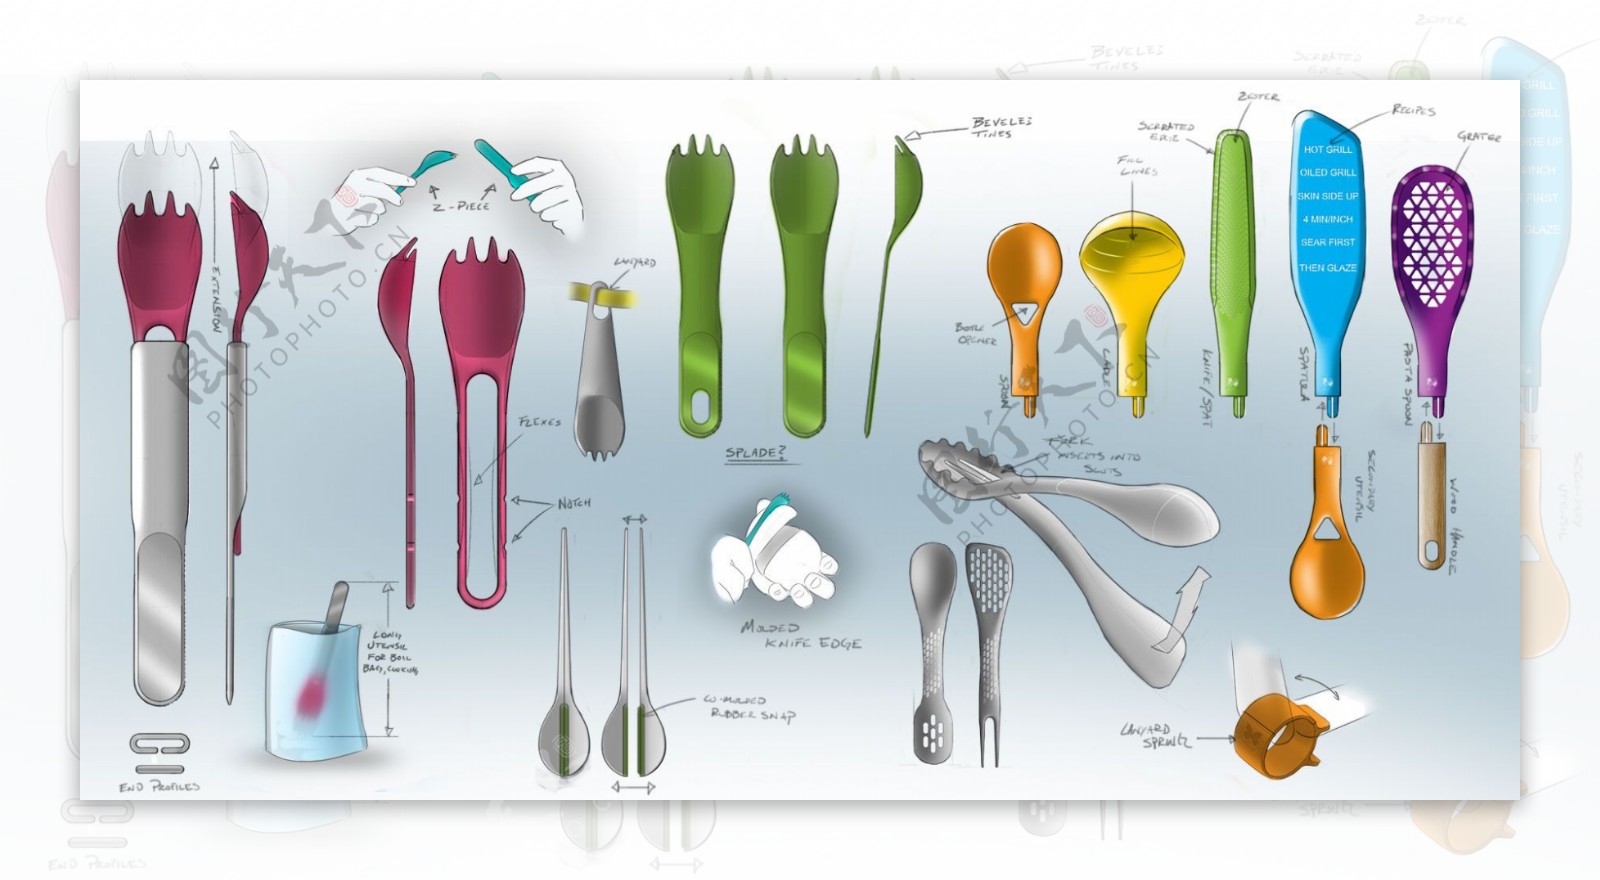 创意刀叉子勺子夹子绘图jpg